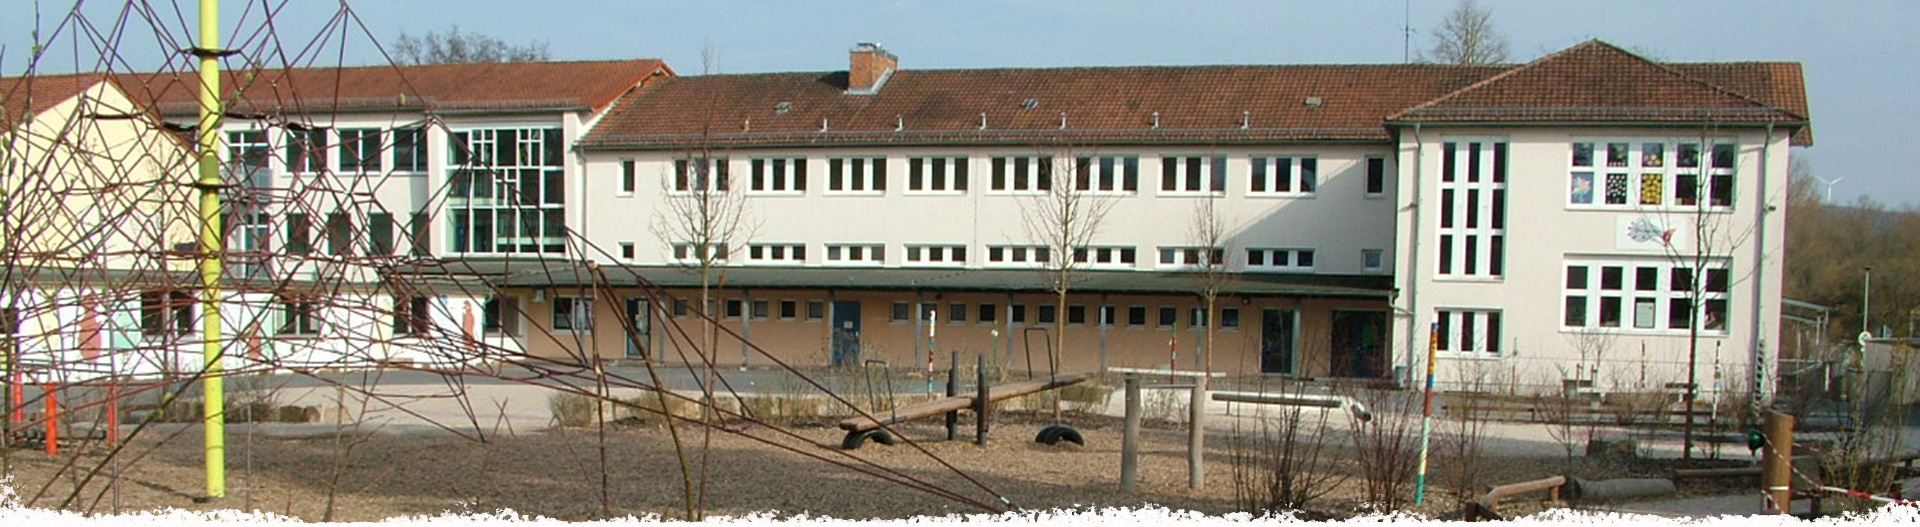 Otto-Dönges-Schule in Nidda